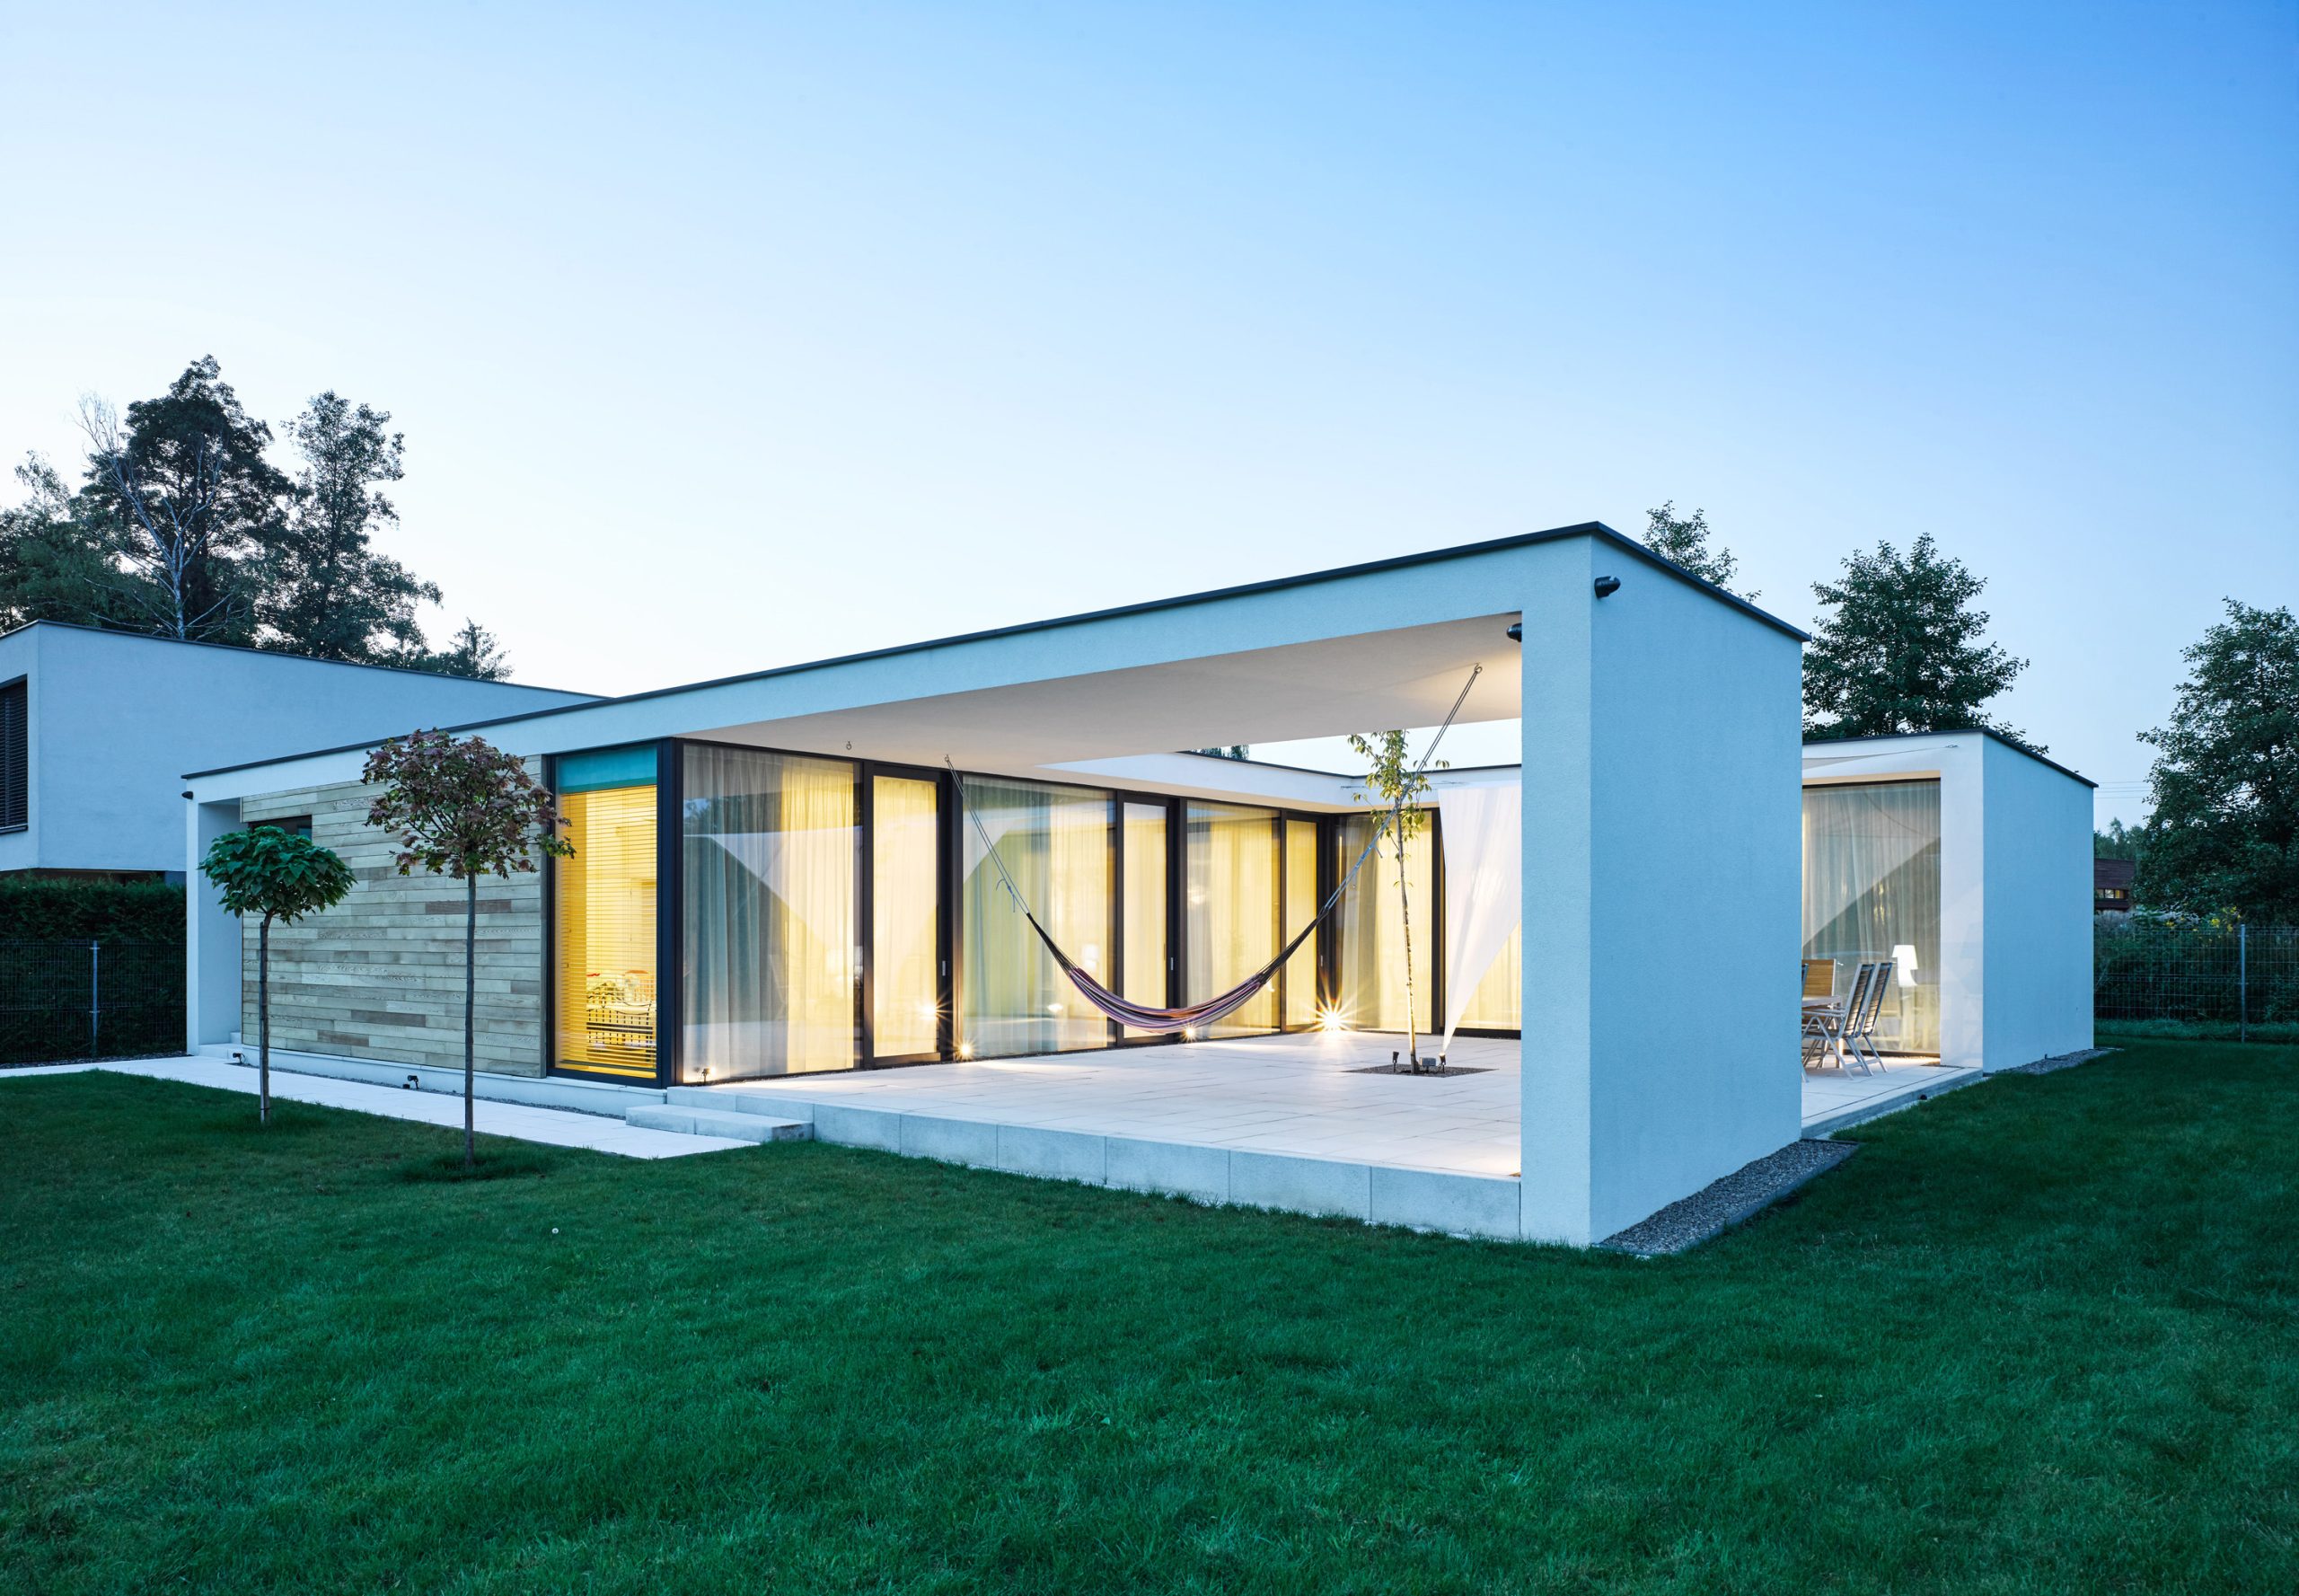 House with a Hammock - projekt Stoprocent Architekci